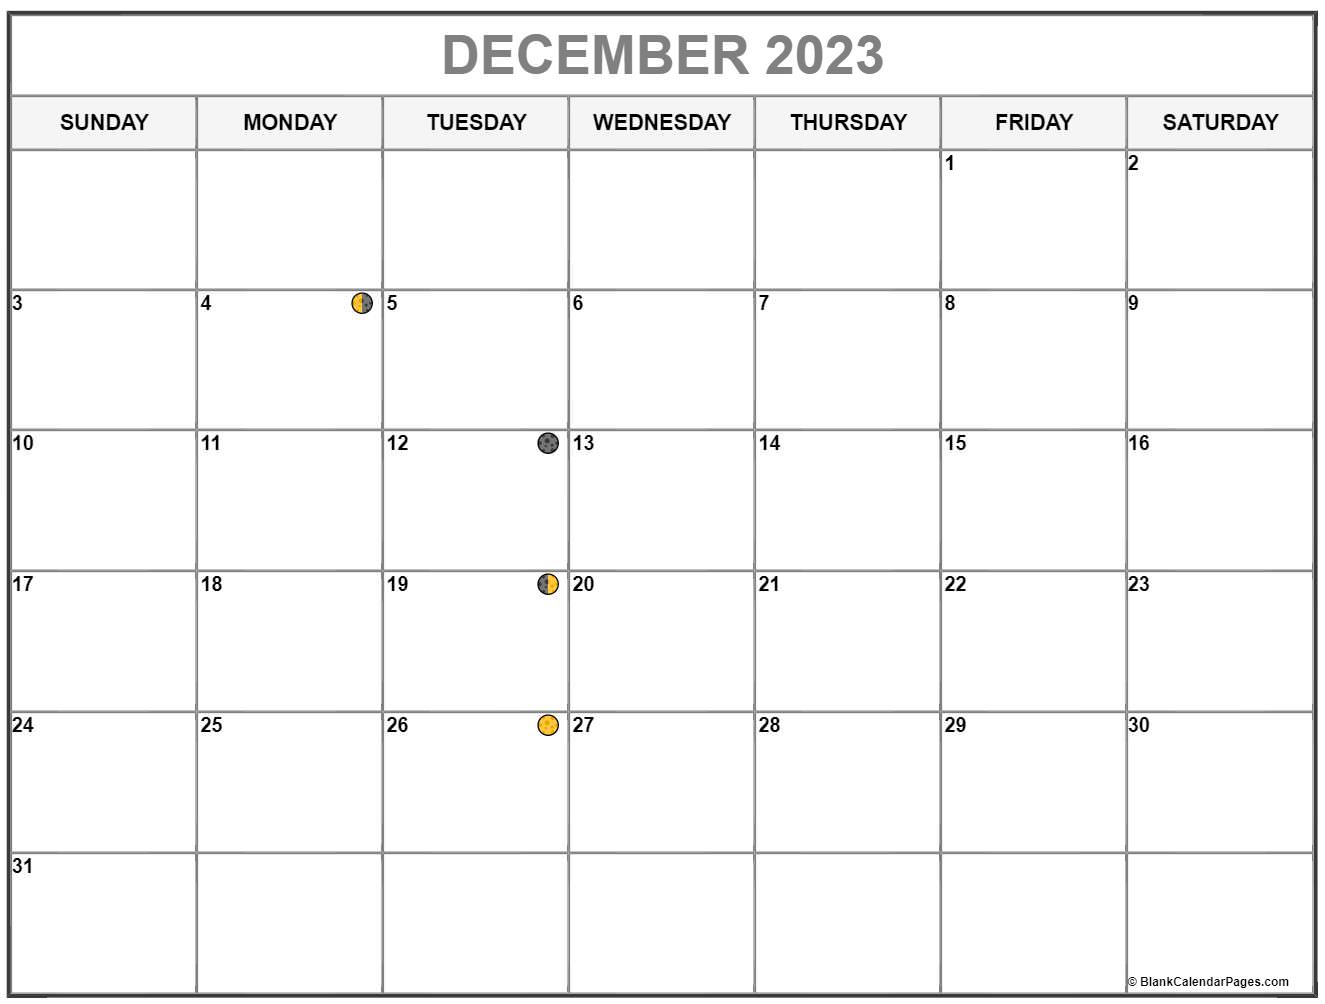 December 2023 Calendar Moon2 